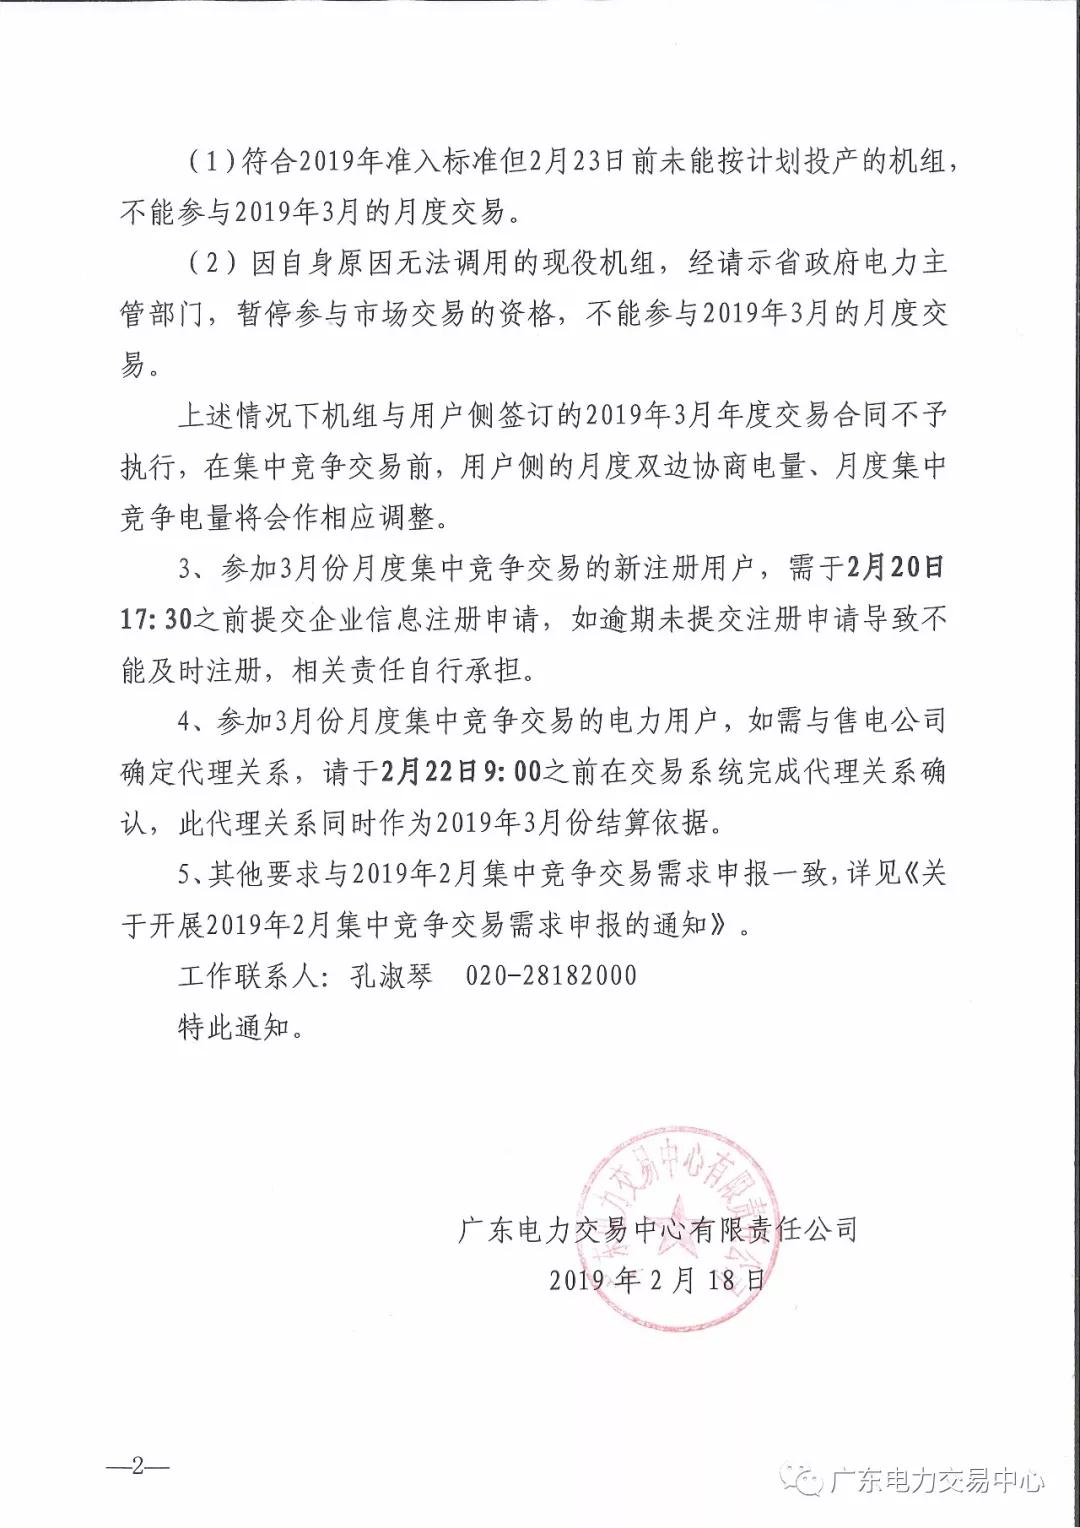 广东2019年3月集中竞争交易需求申报2月22日截止